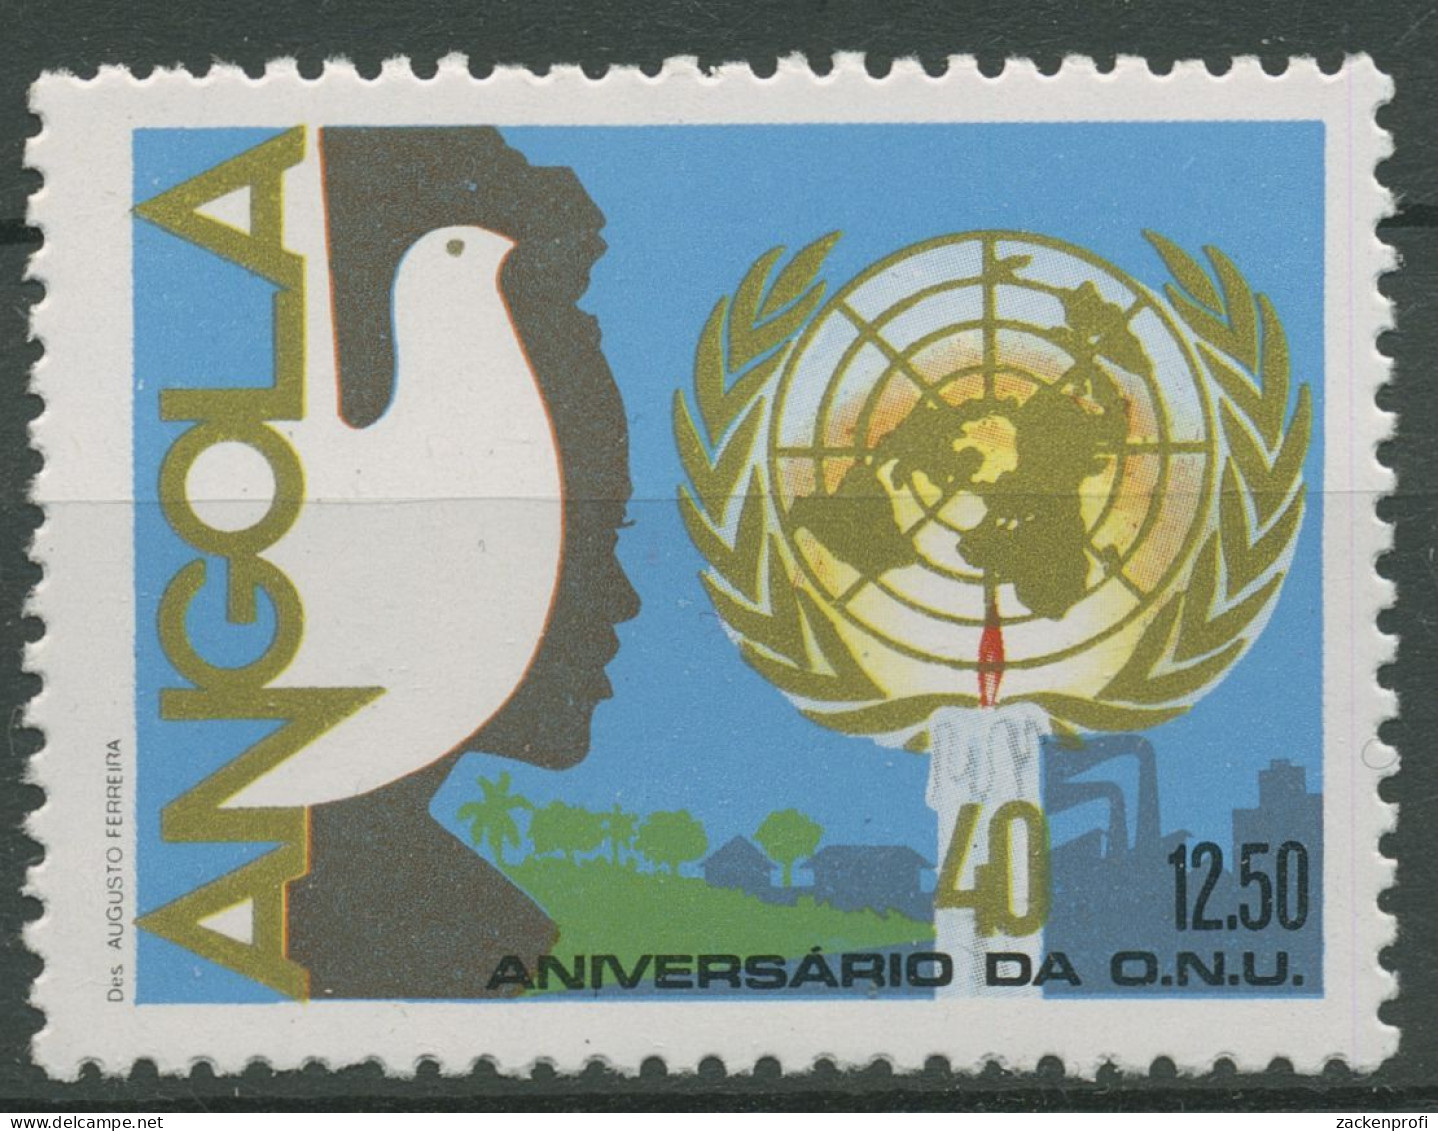 Angola 1985 40 Jahre Vereinte Nationen UNO Friedenstaube 729 Postfrisch - Angola